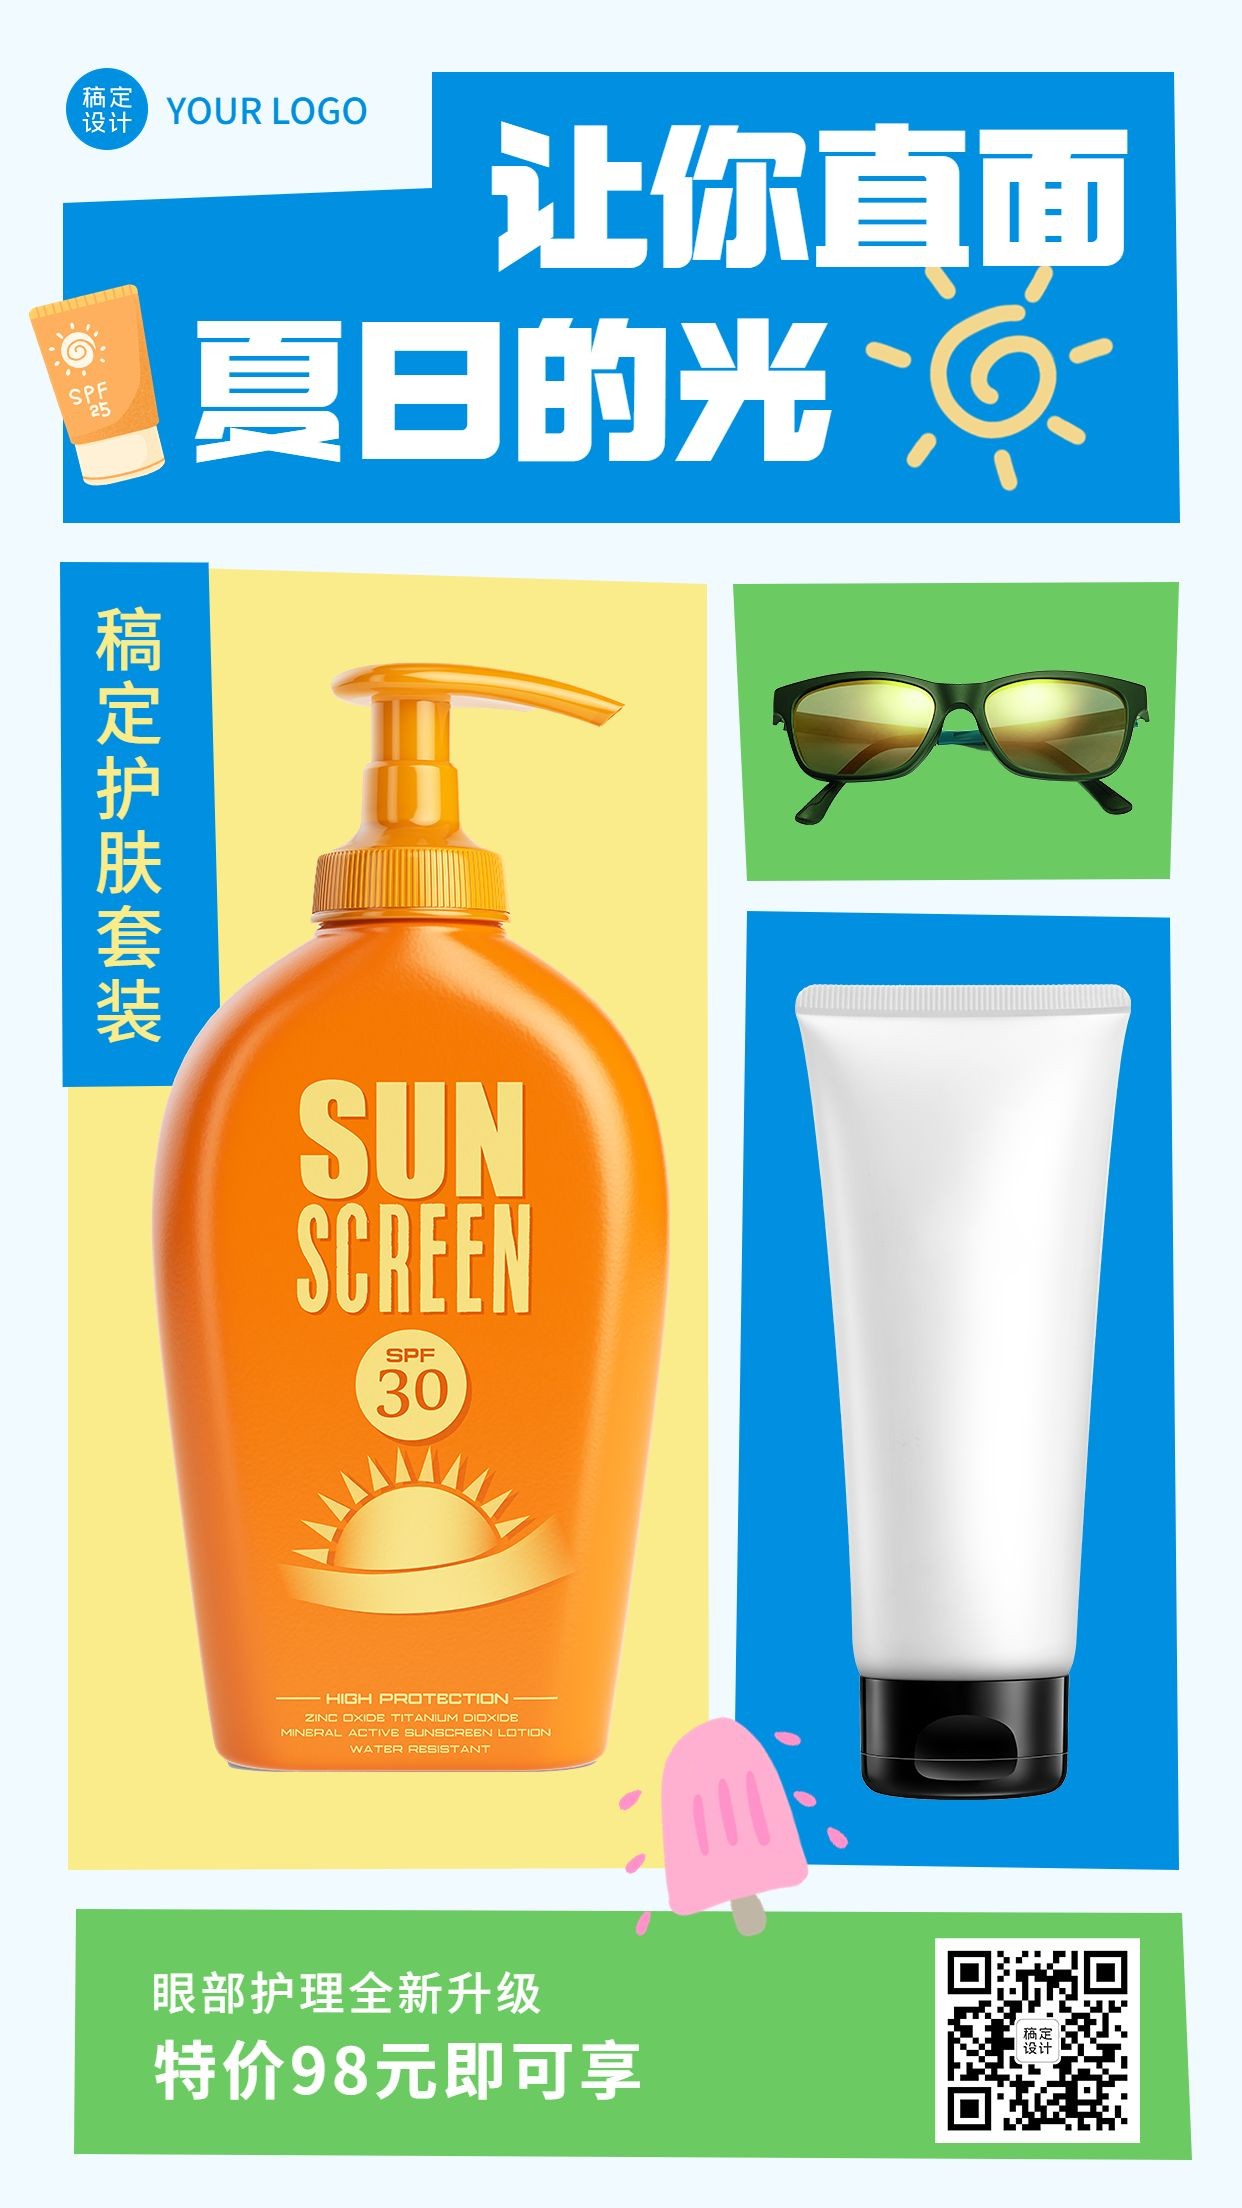 夏系列夏季美业美容院产品营销手机海报预览效果